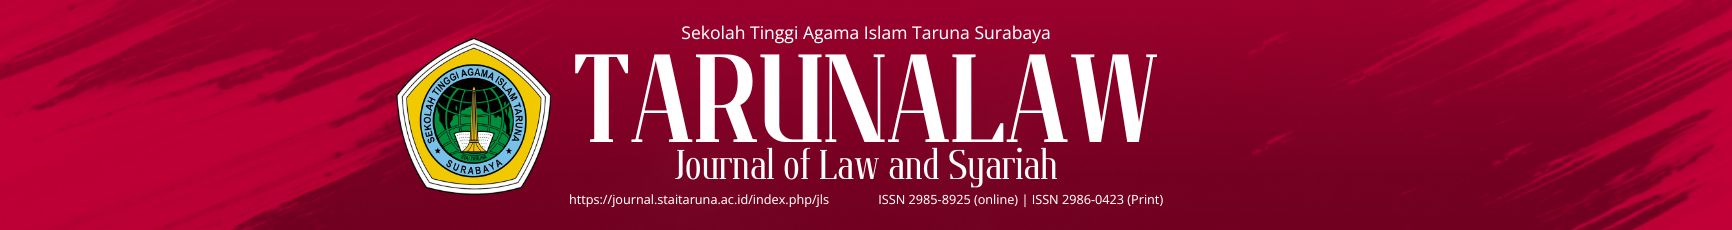 TARUNALAW: Journal of Law and Syariah